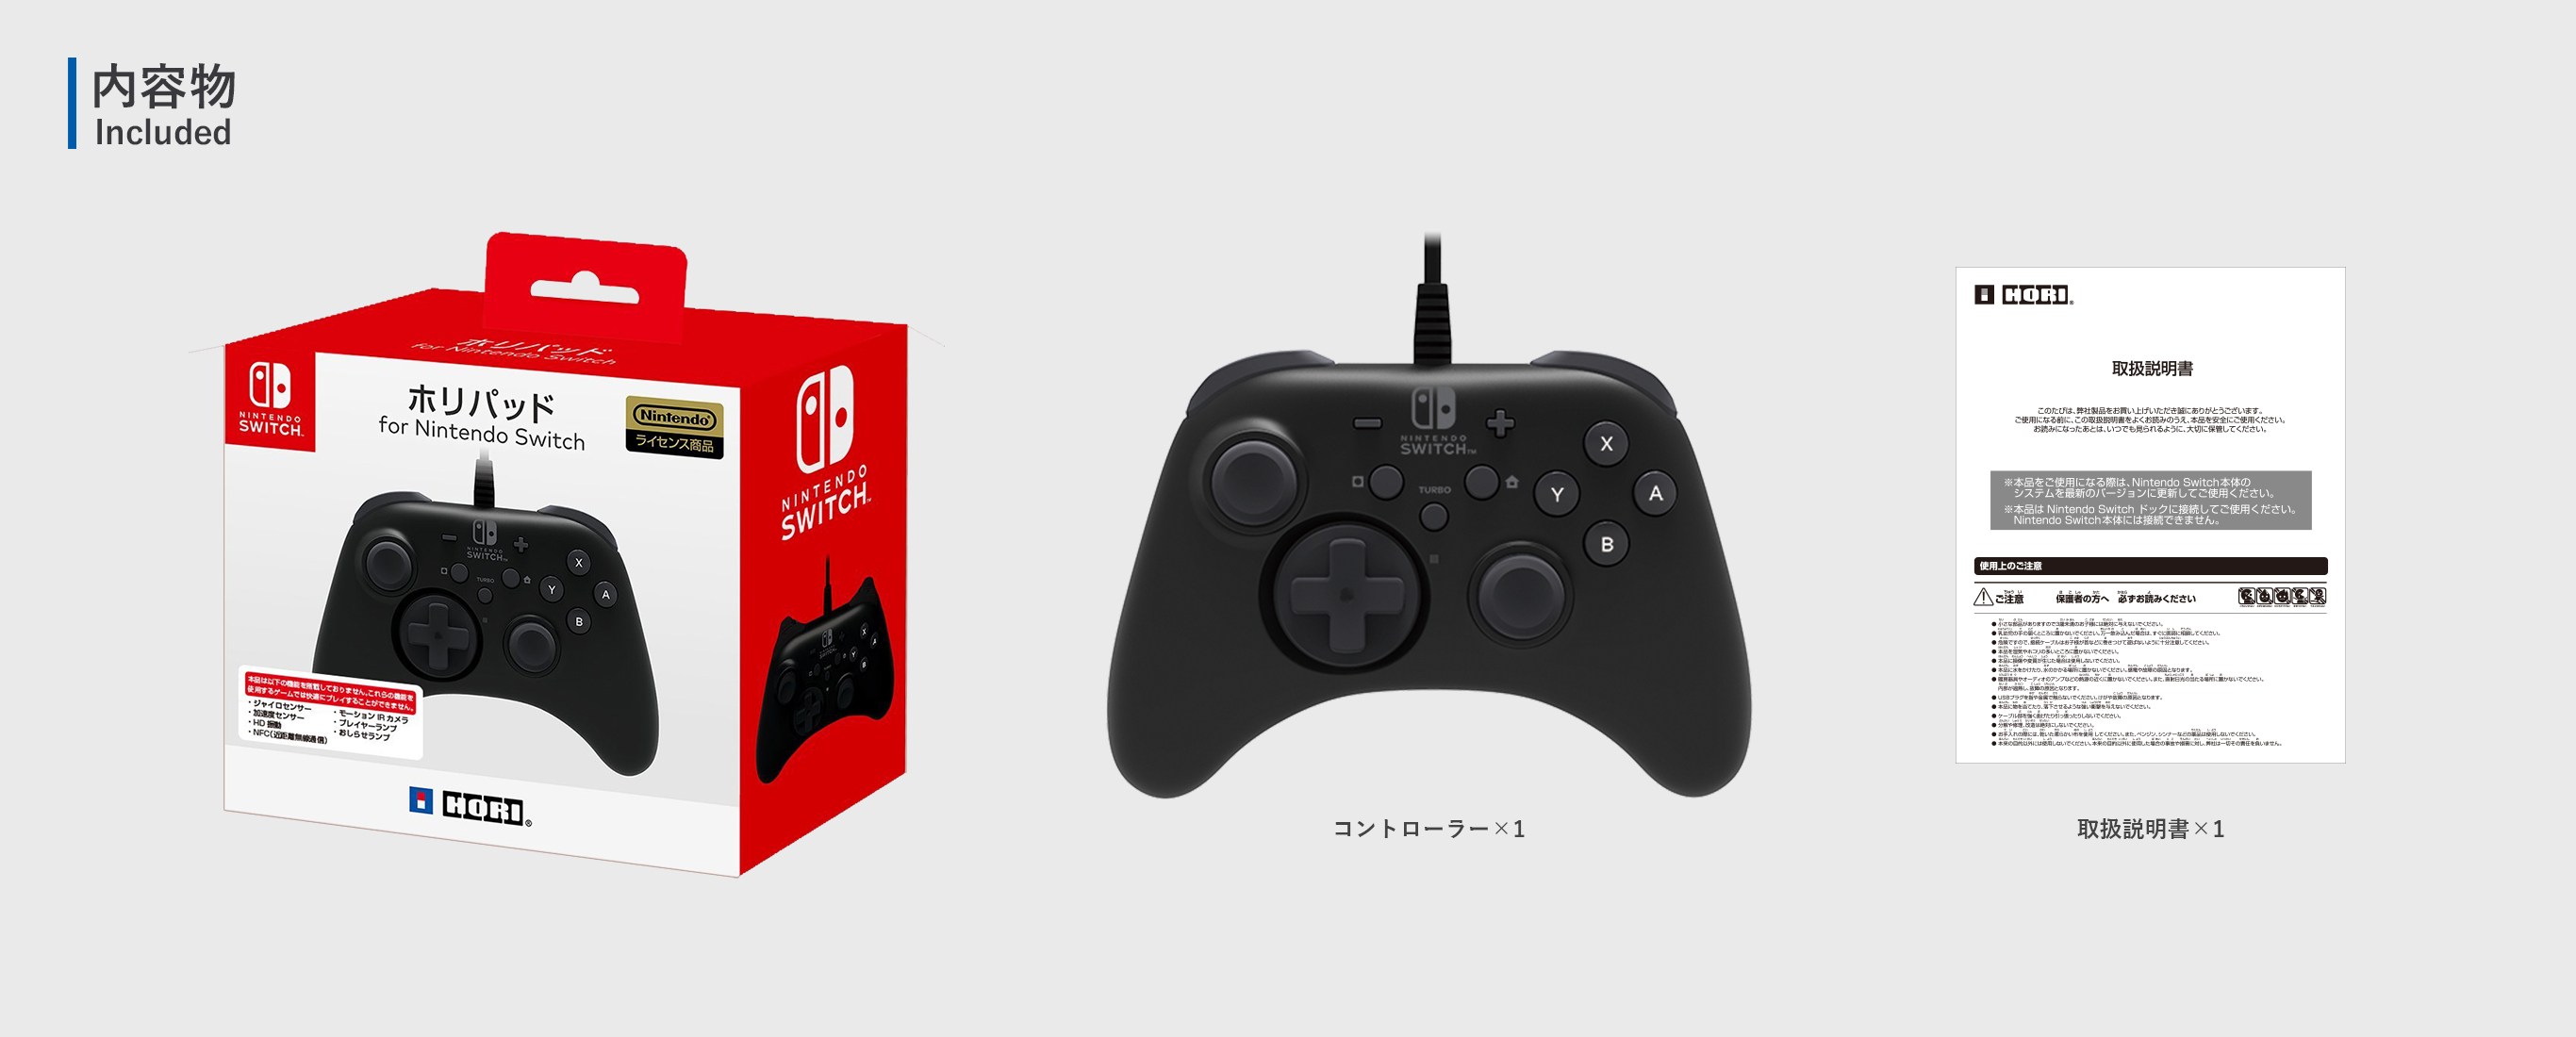 株式会社 HORI ホリパッド for Nintendo Switch